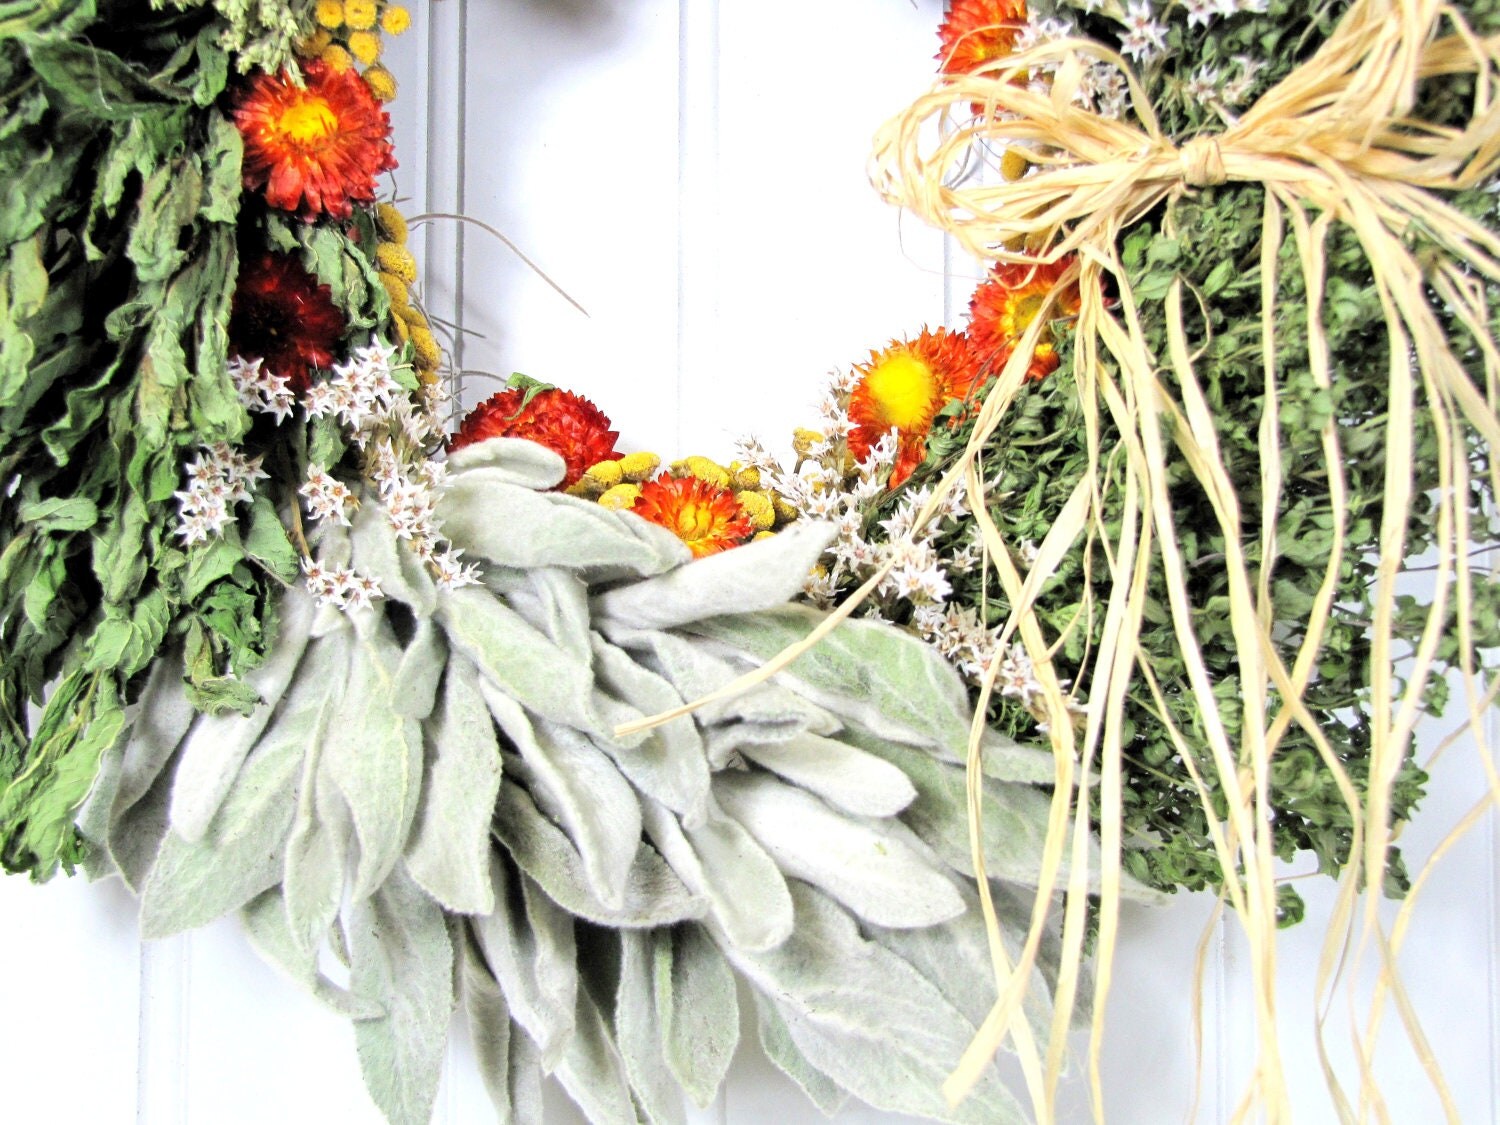 Dried Herb Wreath Kitchen Decor Herb Wreath By